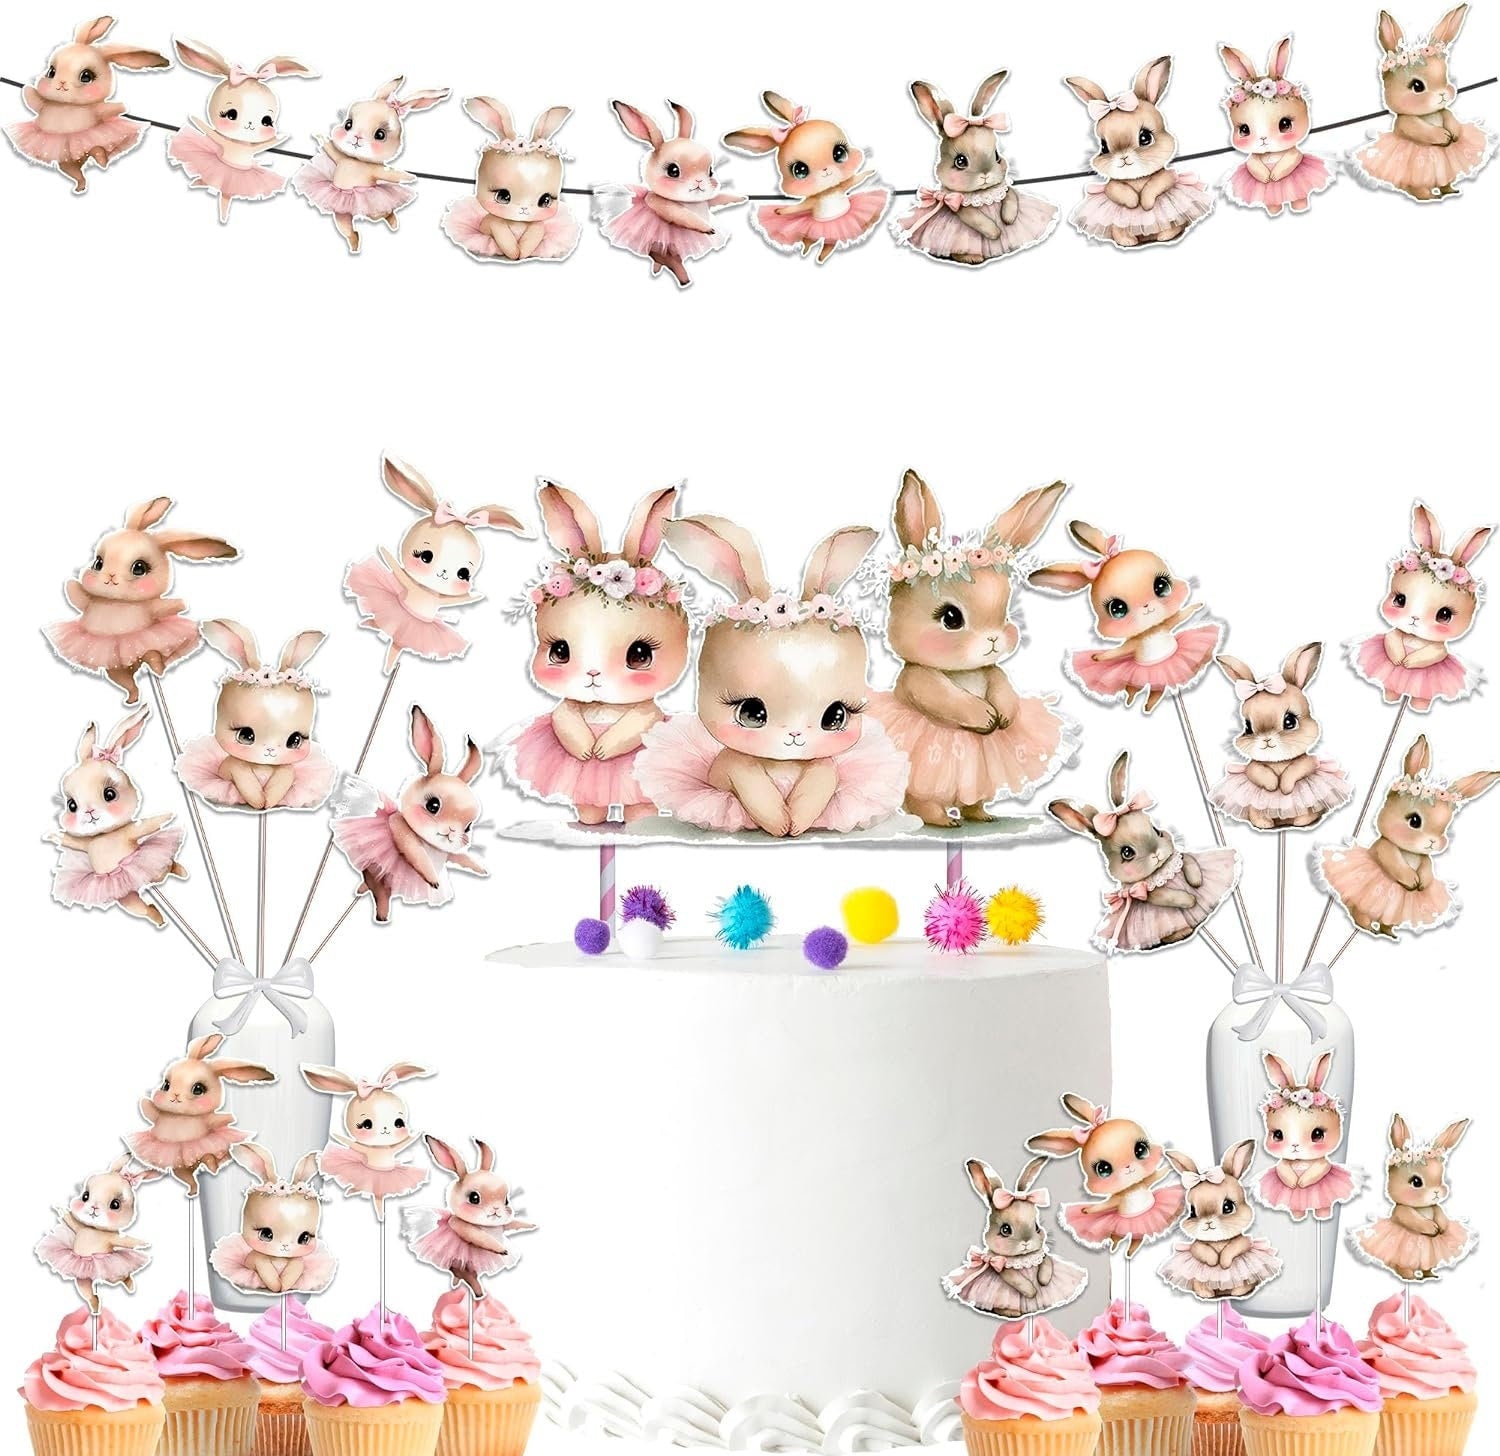 Enchanted Bunny Garden Party Decor Set